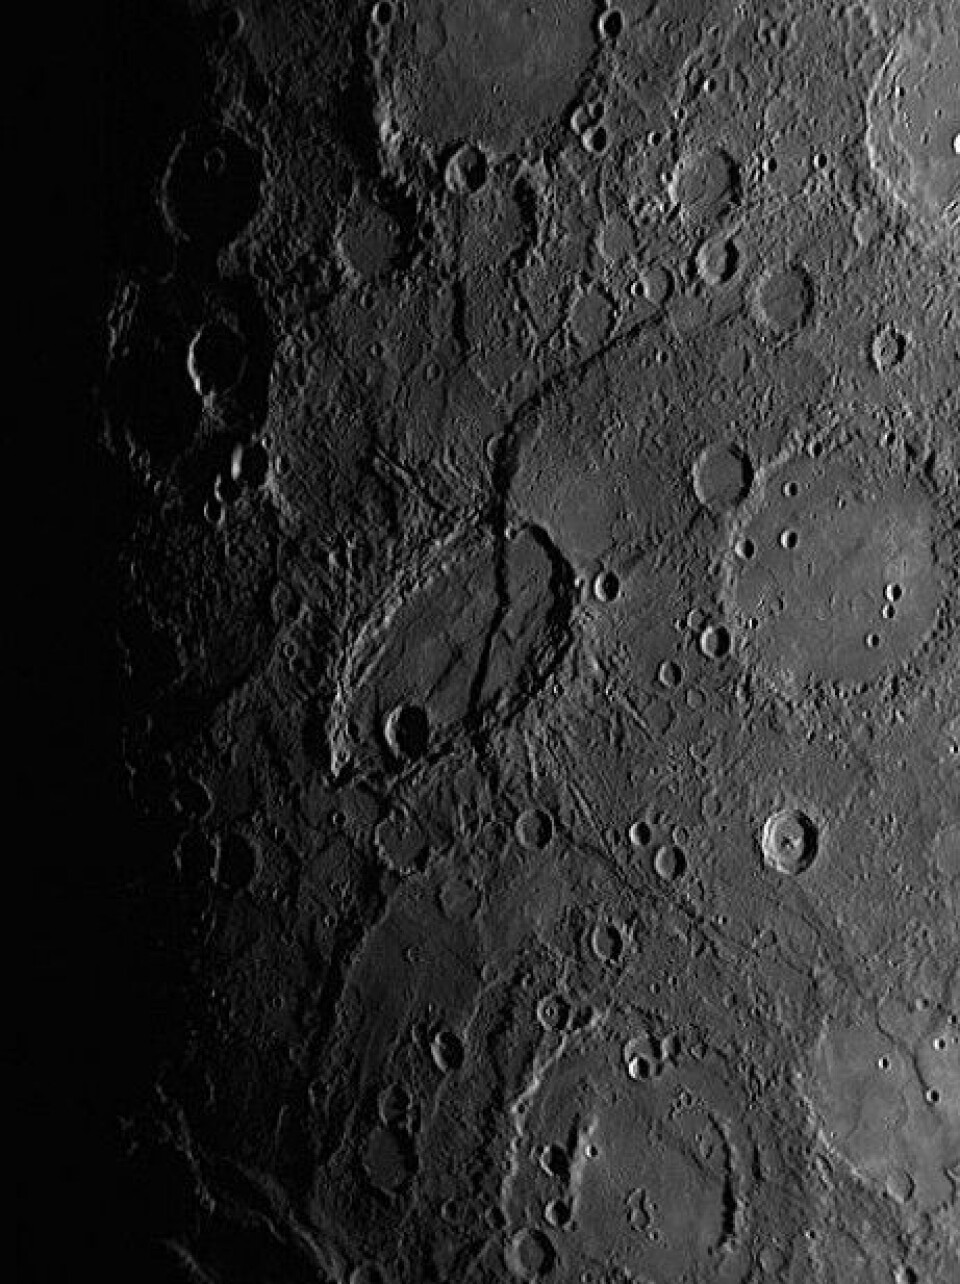 Merkur er dekt av trappeskrenter som et resultat av plateforskyving. Fordelinga av disse rundt på planeten tyder på at den har krympa så mye som seks kilometer siden starten, og prosessen foregår muligens fortsatt. (Foto: NASA)